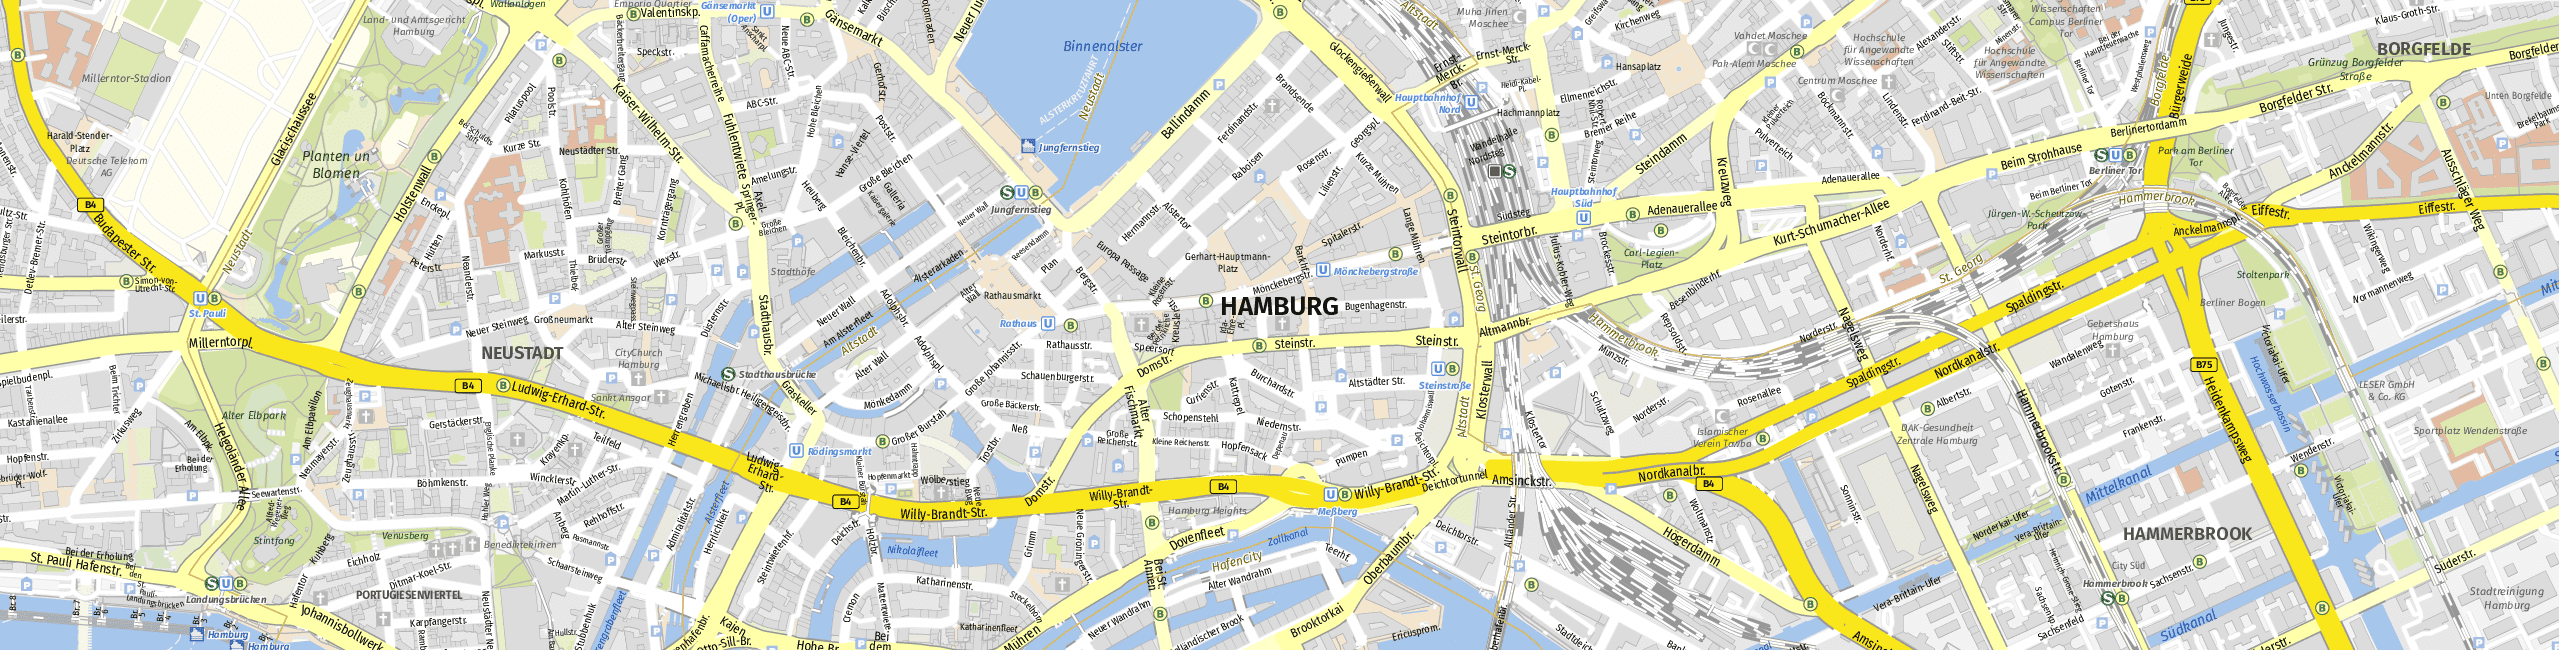 Stadtplan Hamburg zum Downloaden.